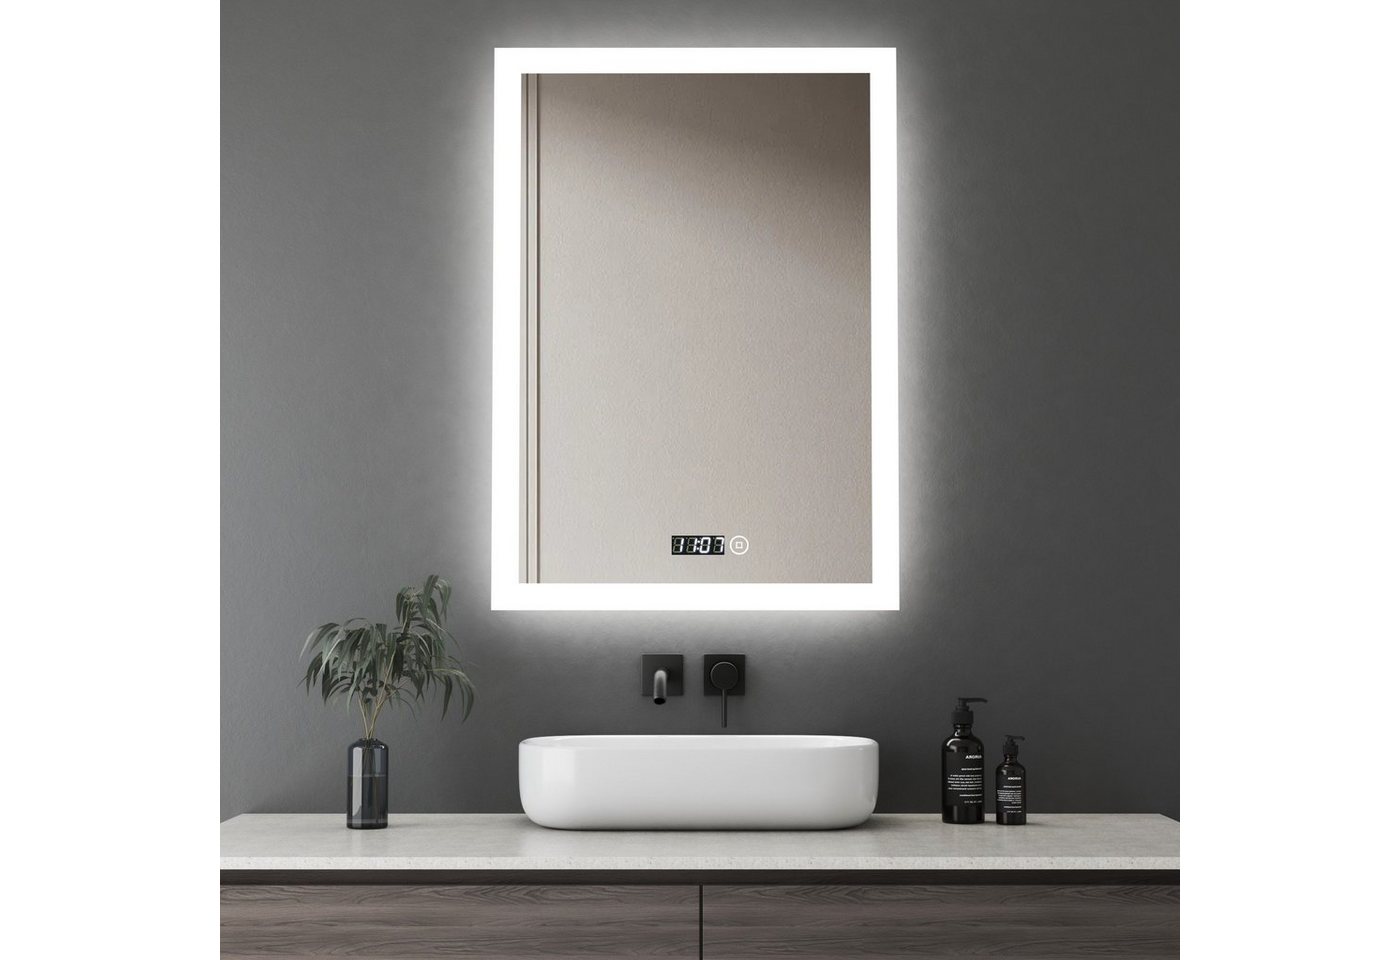 WDWRITTI Wandspiegel Led Badspiegel 50x70 mit Uhr 3Lichtfarben Dimmbar Speicherfunktion (Spiegel mit beleuchtung, Kalt/Neutral/Warmweiß), Touch, Wandschalter, Energiesparend von WDWRITTI